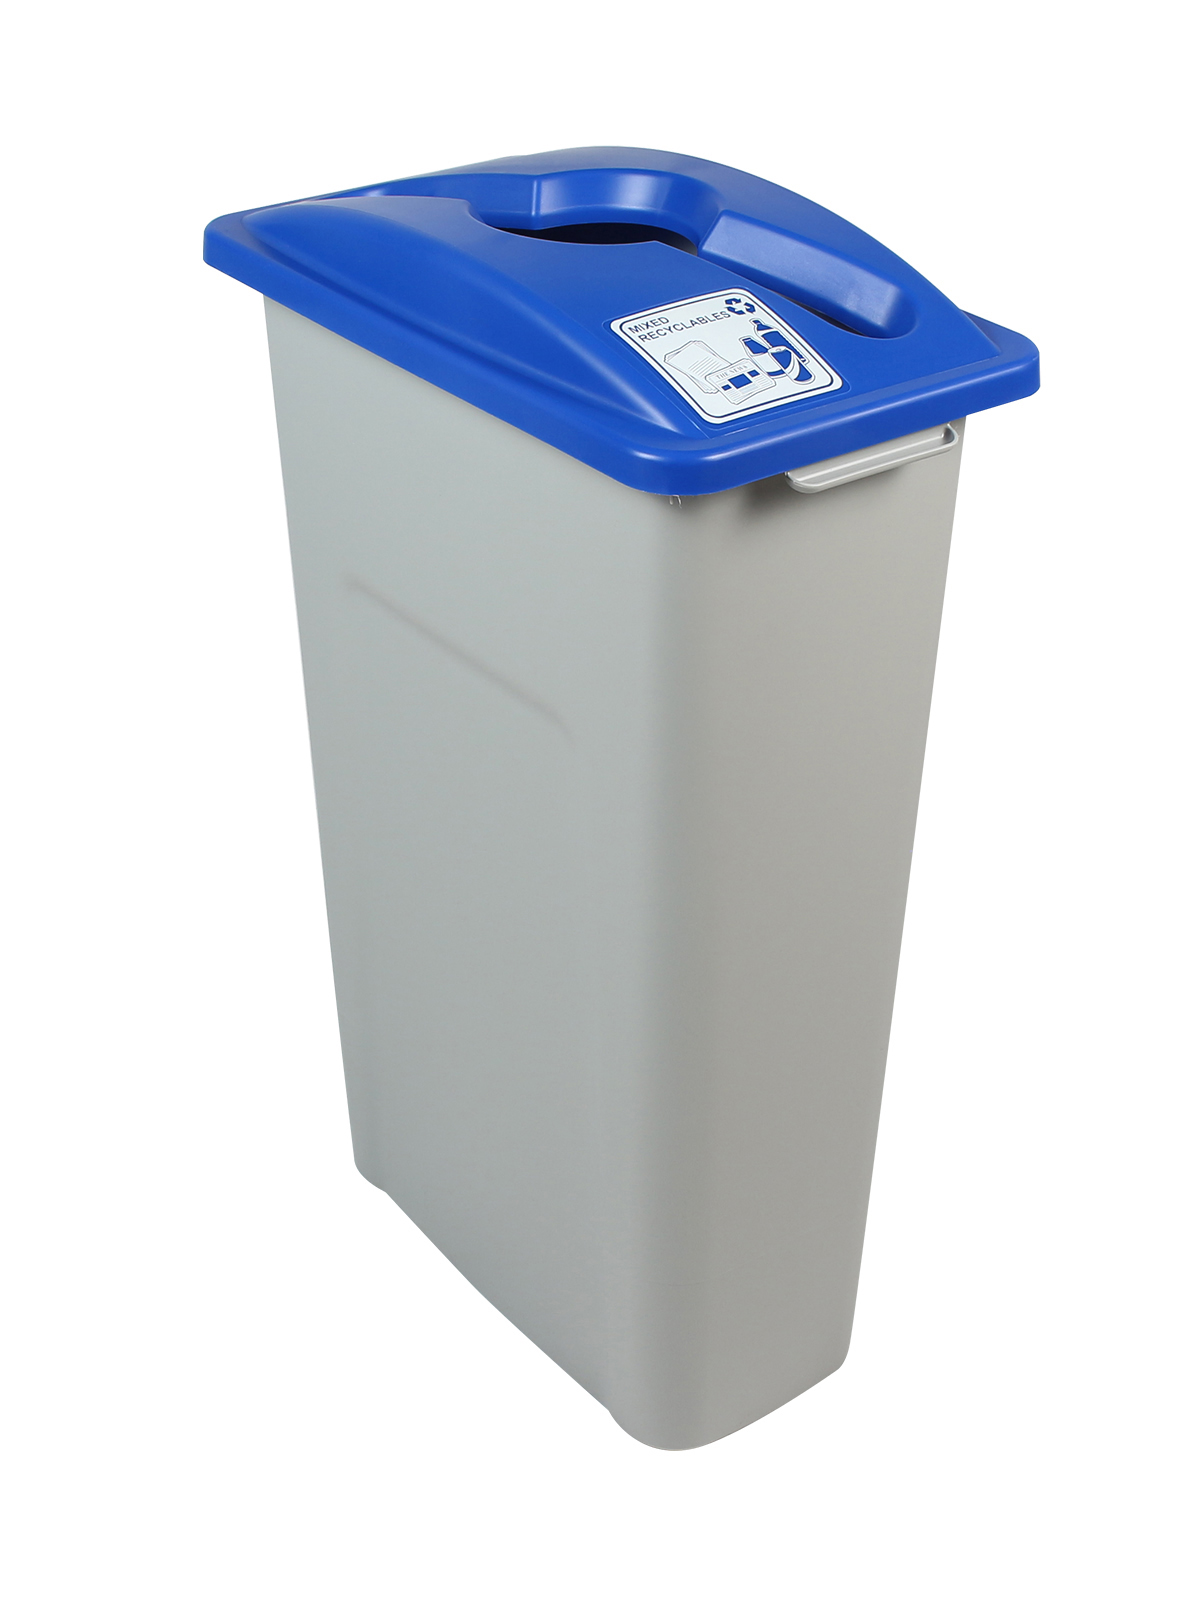 废物观察者 - 单混合回收 - 混合 - 灰蓝色